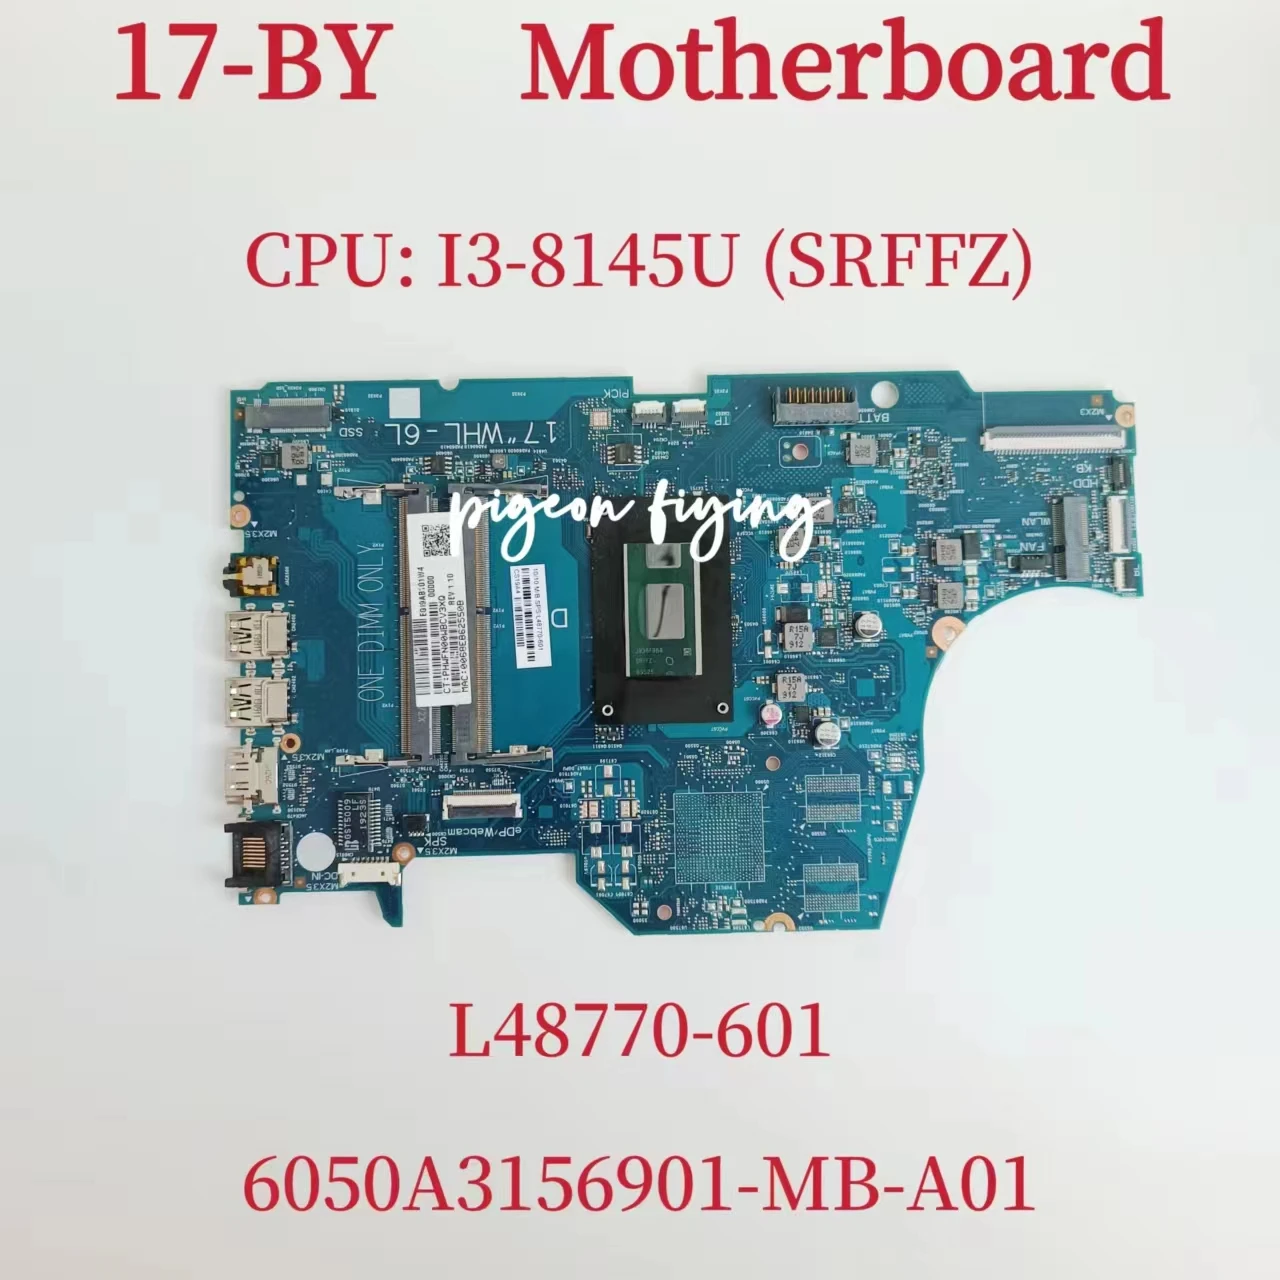 

6050A3156901-MB-A01 Mainboard For HP 17-BY Laptop Motherboard CPU: I3-8145U SRFFZ DDR4 L48770-601 L48770-601 UMA 100% Test OK